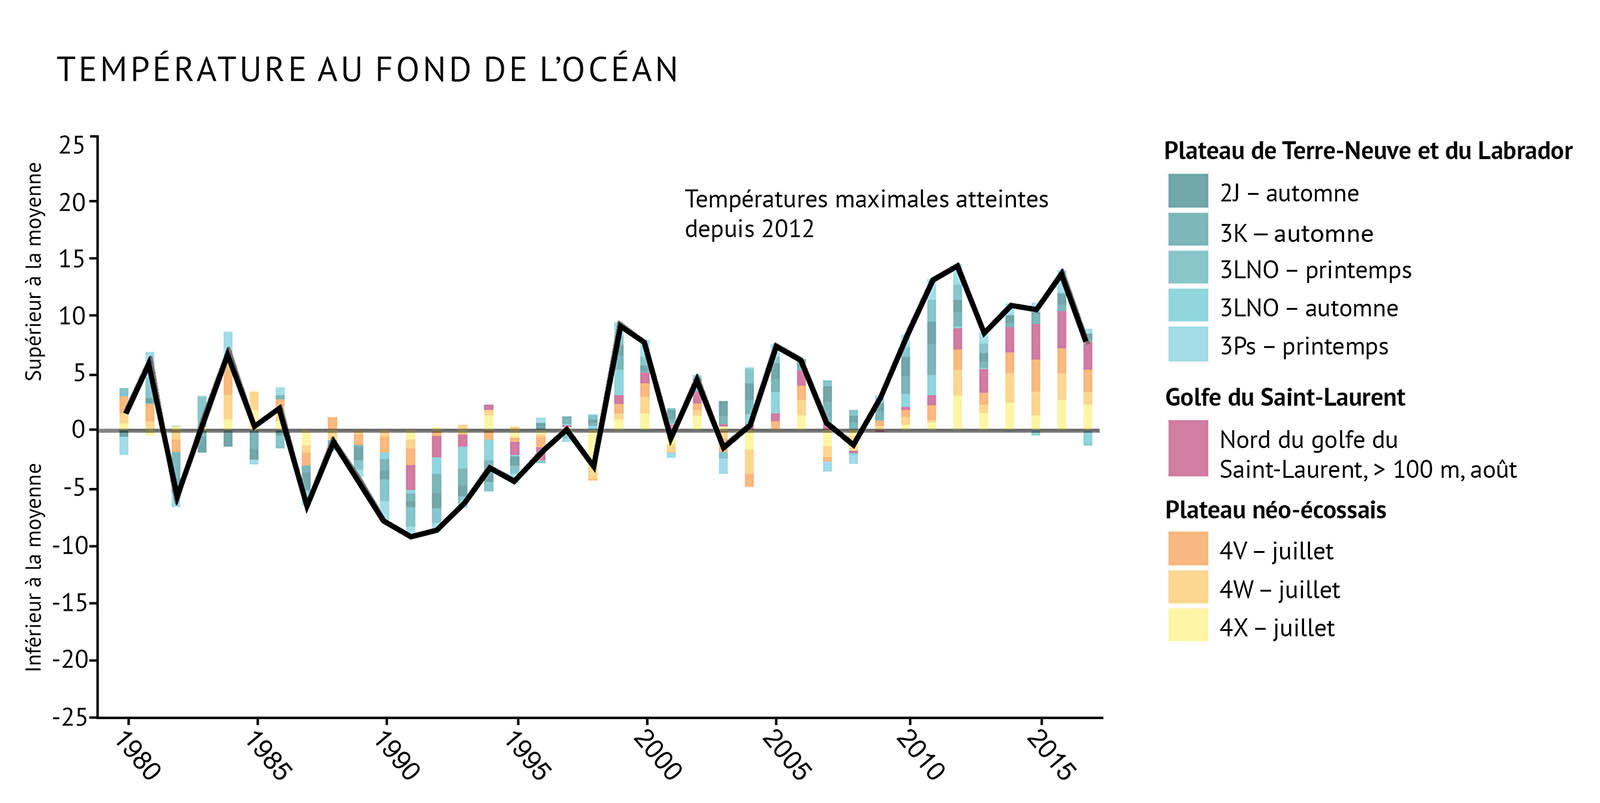 Figure 4 : Indice des températures au fond de l’océan pour les biorégions de l’Atlantique par rapport à la moyenne à long terme (1981-2010). La ligne noire illustrant les tendances représente les anomalies combinées pour toutes les zones (voir la figure 1 pour prendre connaissance des divisions de l’OPANO). Les tendances supérieures à la moyenne représentent des conditions chaudes. Des changements dans les courants ont entraîné des pics records depuis 2012. Un diagramme à barres et un graphique linéaire combinés illustrent les fluctuations de la température au fond de la mer entre 1980 et 2017 pour les trois biorégions de l’Atlantique. Le texte au-dessus des graphiques indique « Température au fond de l’océan ». L’axe vertical de gauche montre les nombres de -25 à 25 par incréments de 5, avec une fine ligne noire de zéro traversant le graphique. Le texte à gauche de l’axe vertical et au-dessus de la ligne zéro indique « Supérieure à la moyenne » et le texte sous la ligne de zéro indique « Inférieure à la moyenne ». L’axe horizontal représente les années entre 1980 et 2015 par tranches de 5 ans. Une légende à droite montre les couleurs des zones de chaque biorégion, représentées par des barres empilées sur le graphique. Les zones des plateaux de Terre-Neuve et du Labrador sont indiquées dans des tons de bleu, celles du golfe du Saint-Laurent dans des tons de rose et celles de la plate-forme Néo-Écossaise dans des tons d’orange. Une ligne noire épaisse s’étend entre l’axe vertical et l’axe horizontal pour représenter la tendance combinée de la température, avec des températures supérieures à la moyenne dans les années 2010. Un texte indique « Pics records depuis 2012 » au-dessus de la ligne sur le graphique de droite.